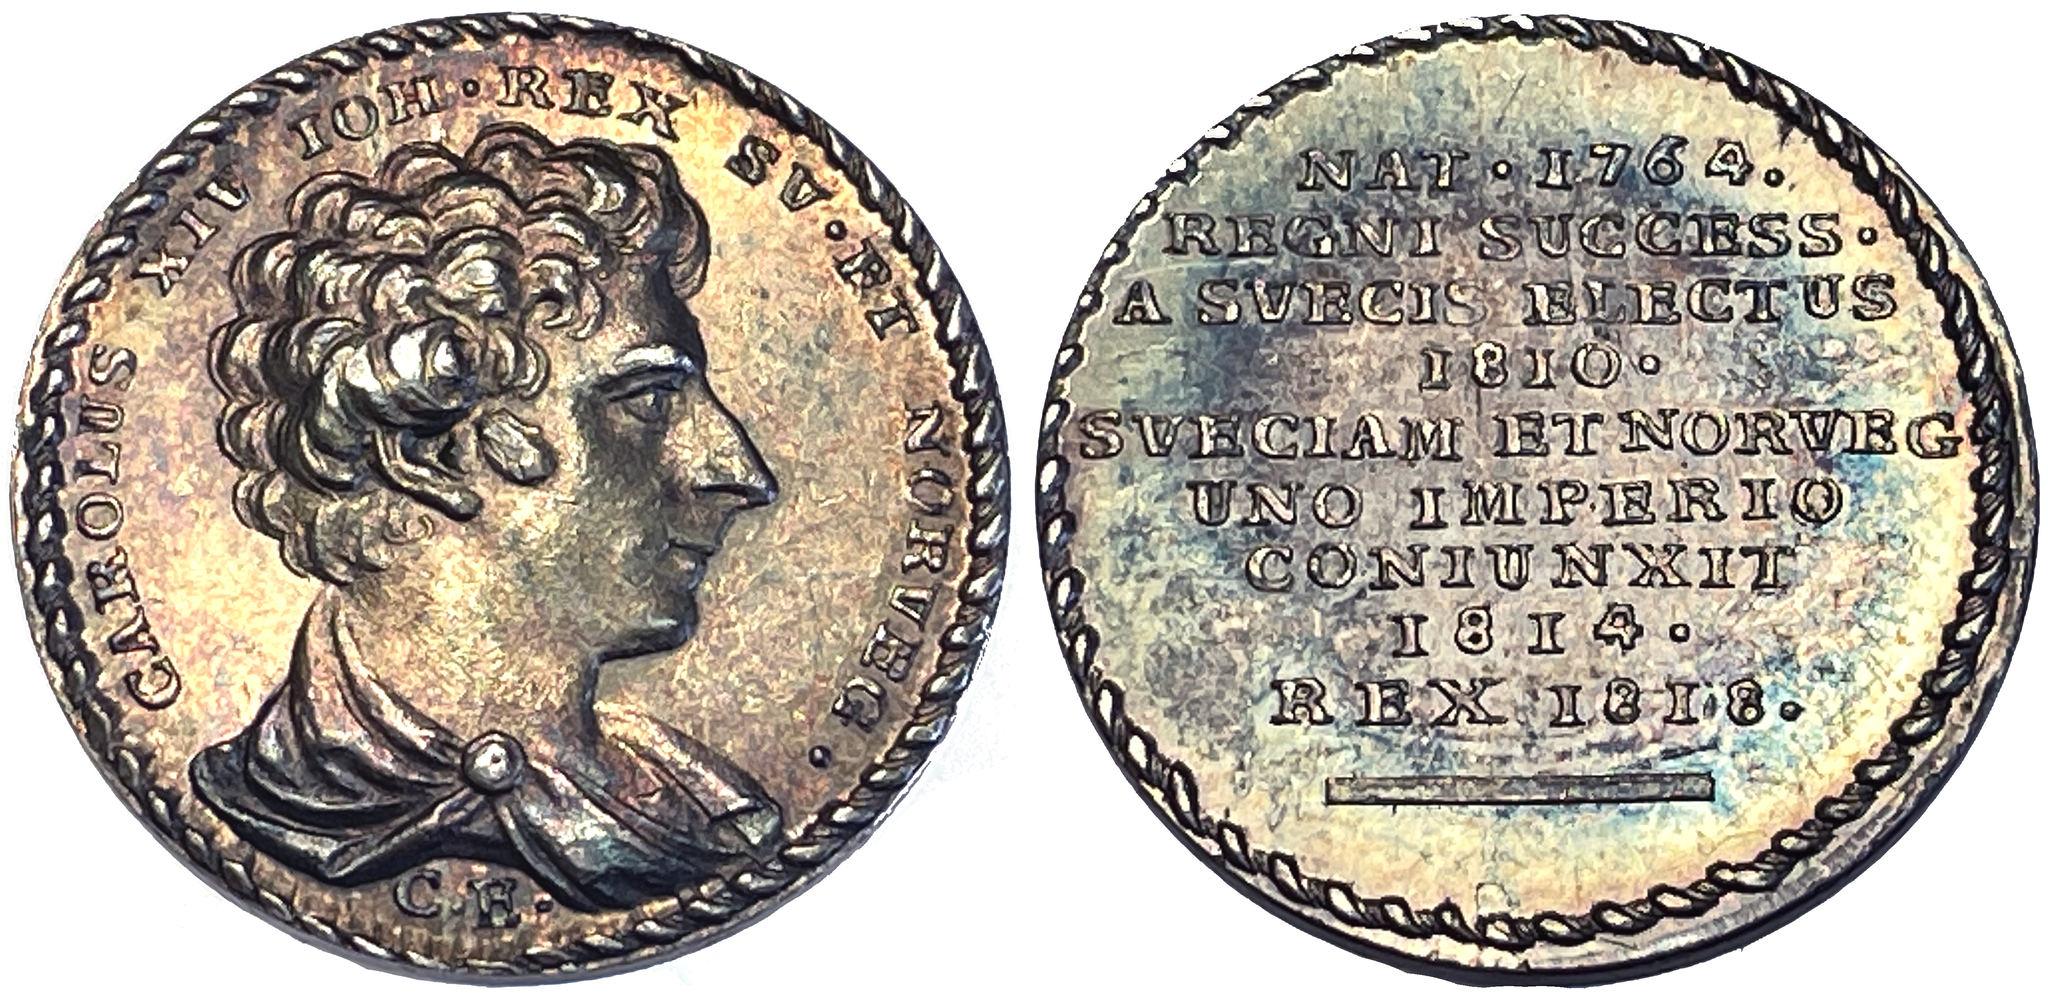 Sverige, Karl XIV Johan 1818-1844, Silvermedalj av C. Enhörning till konungens kröning 11 maj 1818 - SÄLLSYNT